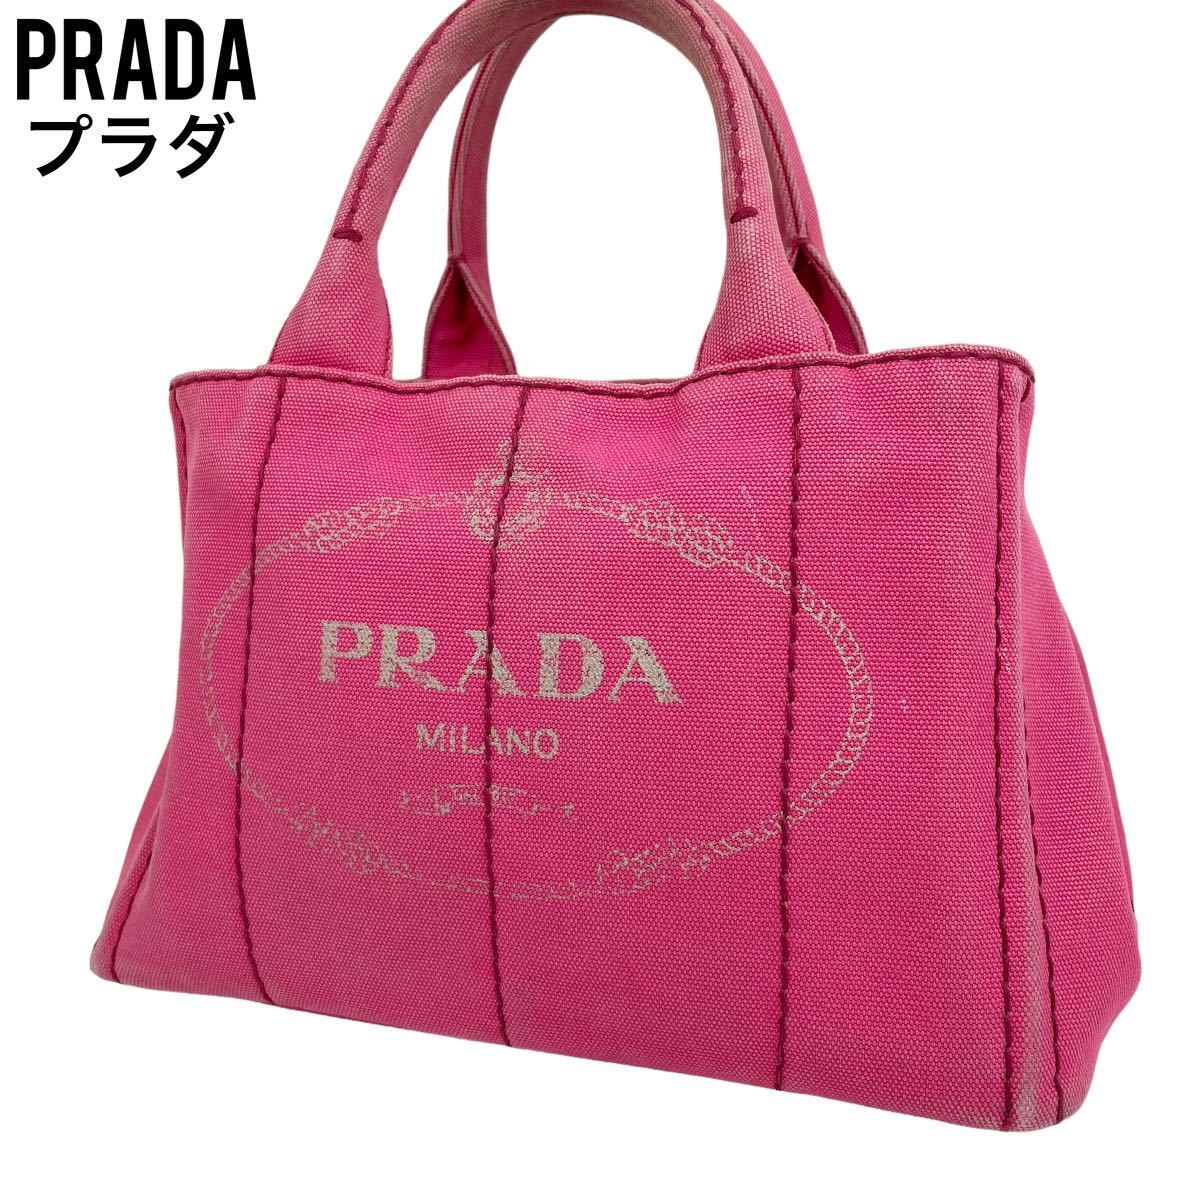 大人気新作 良品 PRADA プラダ ハンドバッグ カナパ キャンバス ピンク